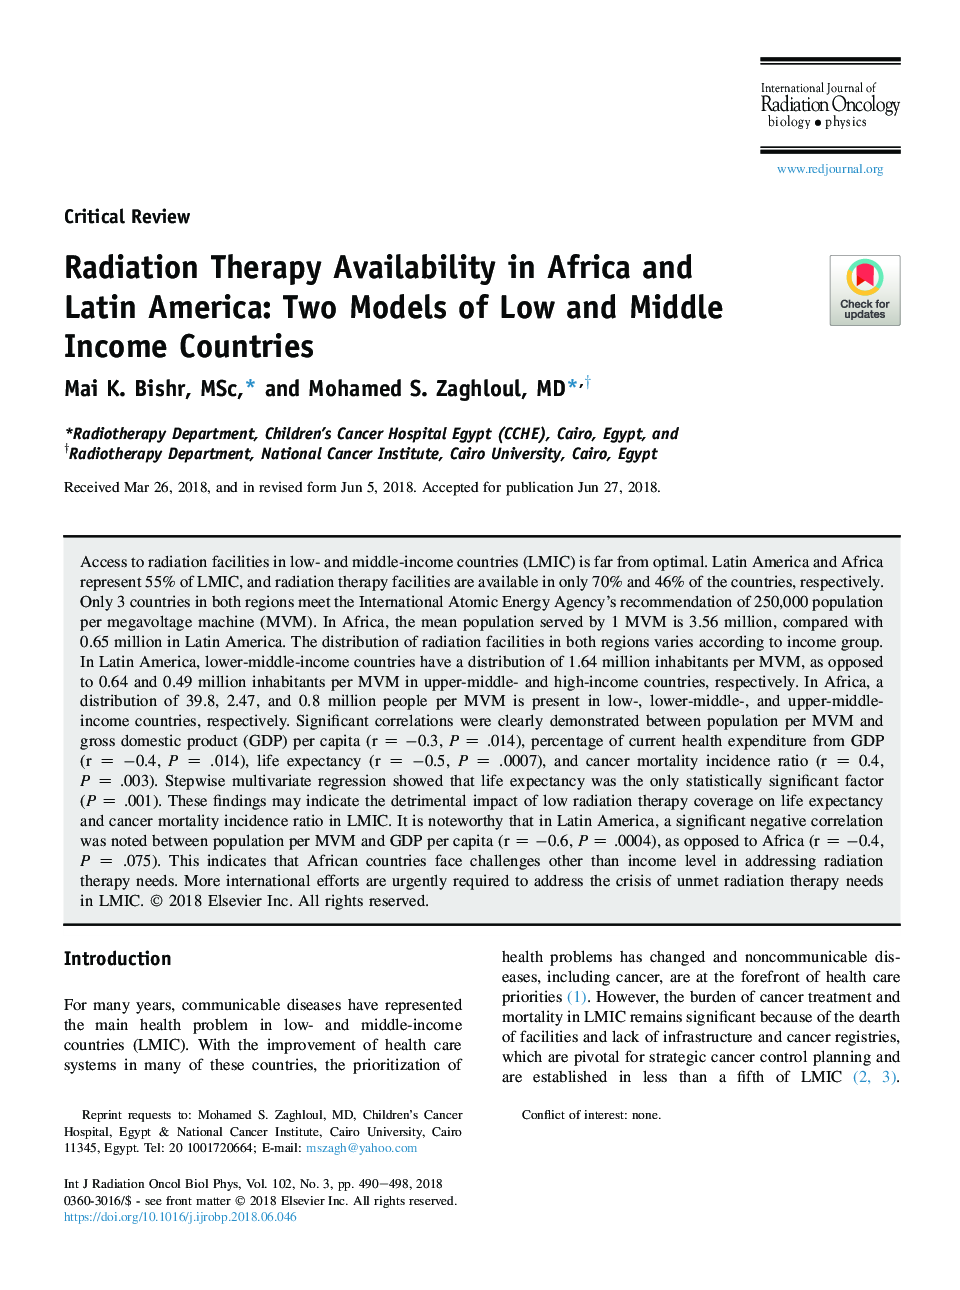 دسترسی به پرتو درمانی در آفریقا و آمریکای لاتین: دو مدل درآمدهای کم و متوسط